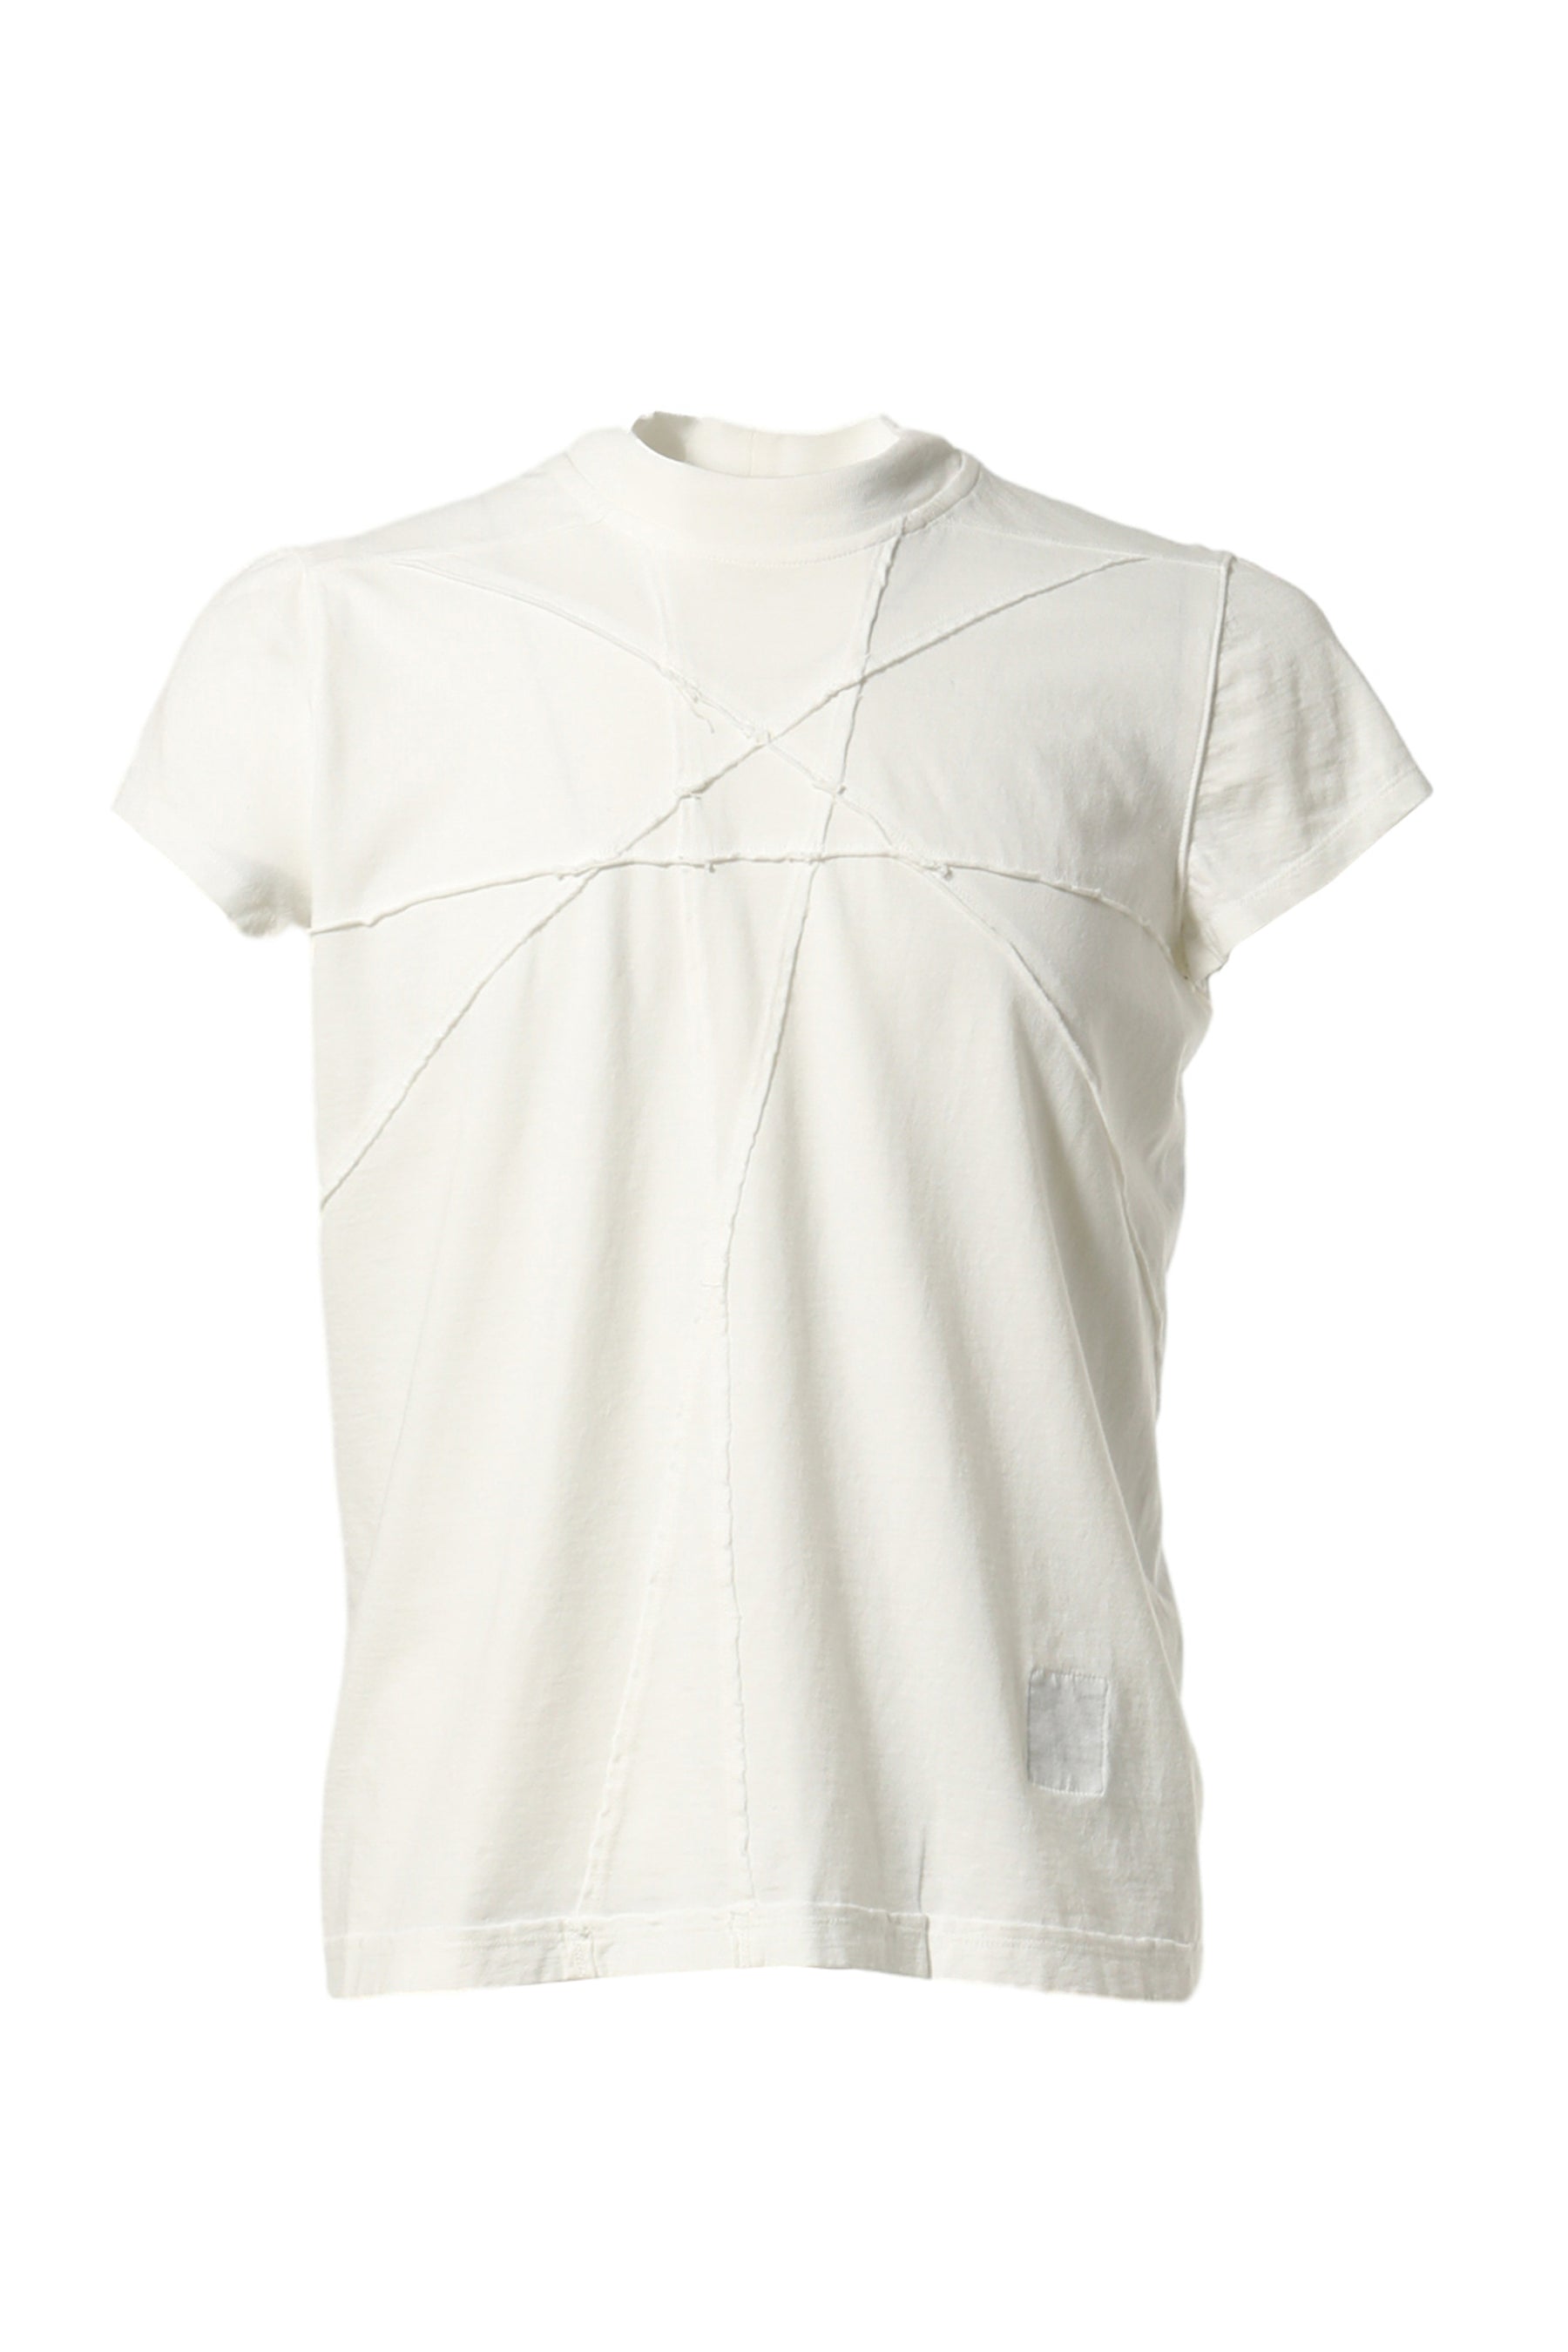 新品 RICK OWENS DRKSHDW LEVEL TEE MILK L - Tシャツ/カットソー(半袖